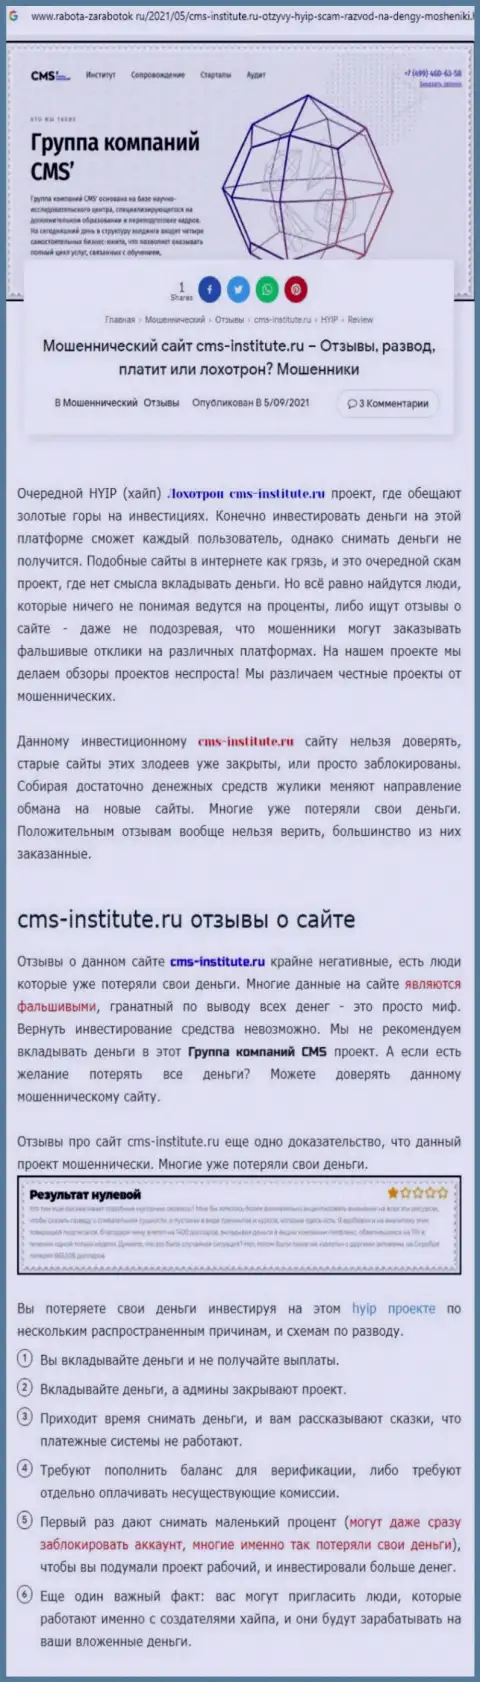 CMS-Institute Ru - это циничный слив реальных клиентов (обзорная статья противоправных махинаций)